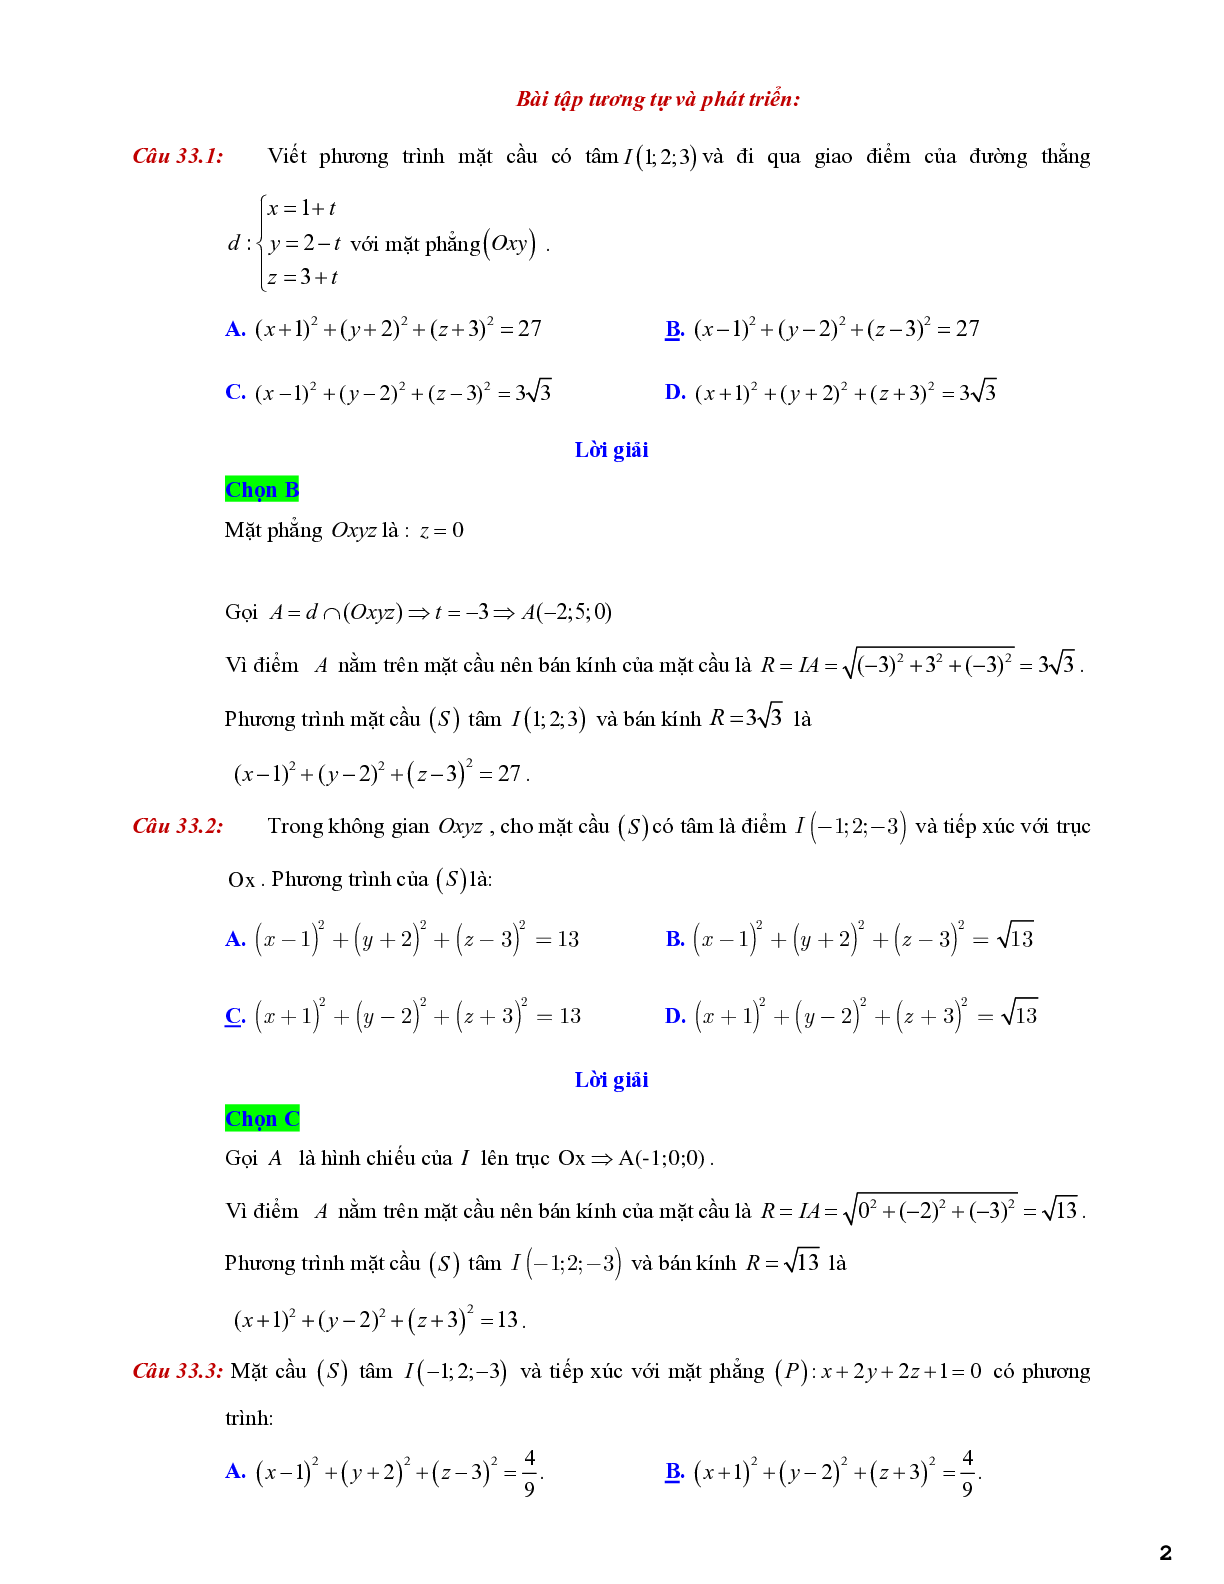 Lý thuyết và bài tập về viết phương trình mặt cầu - có đáp án chi tiết (trang 2)